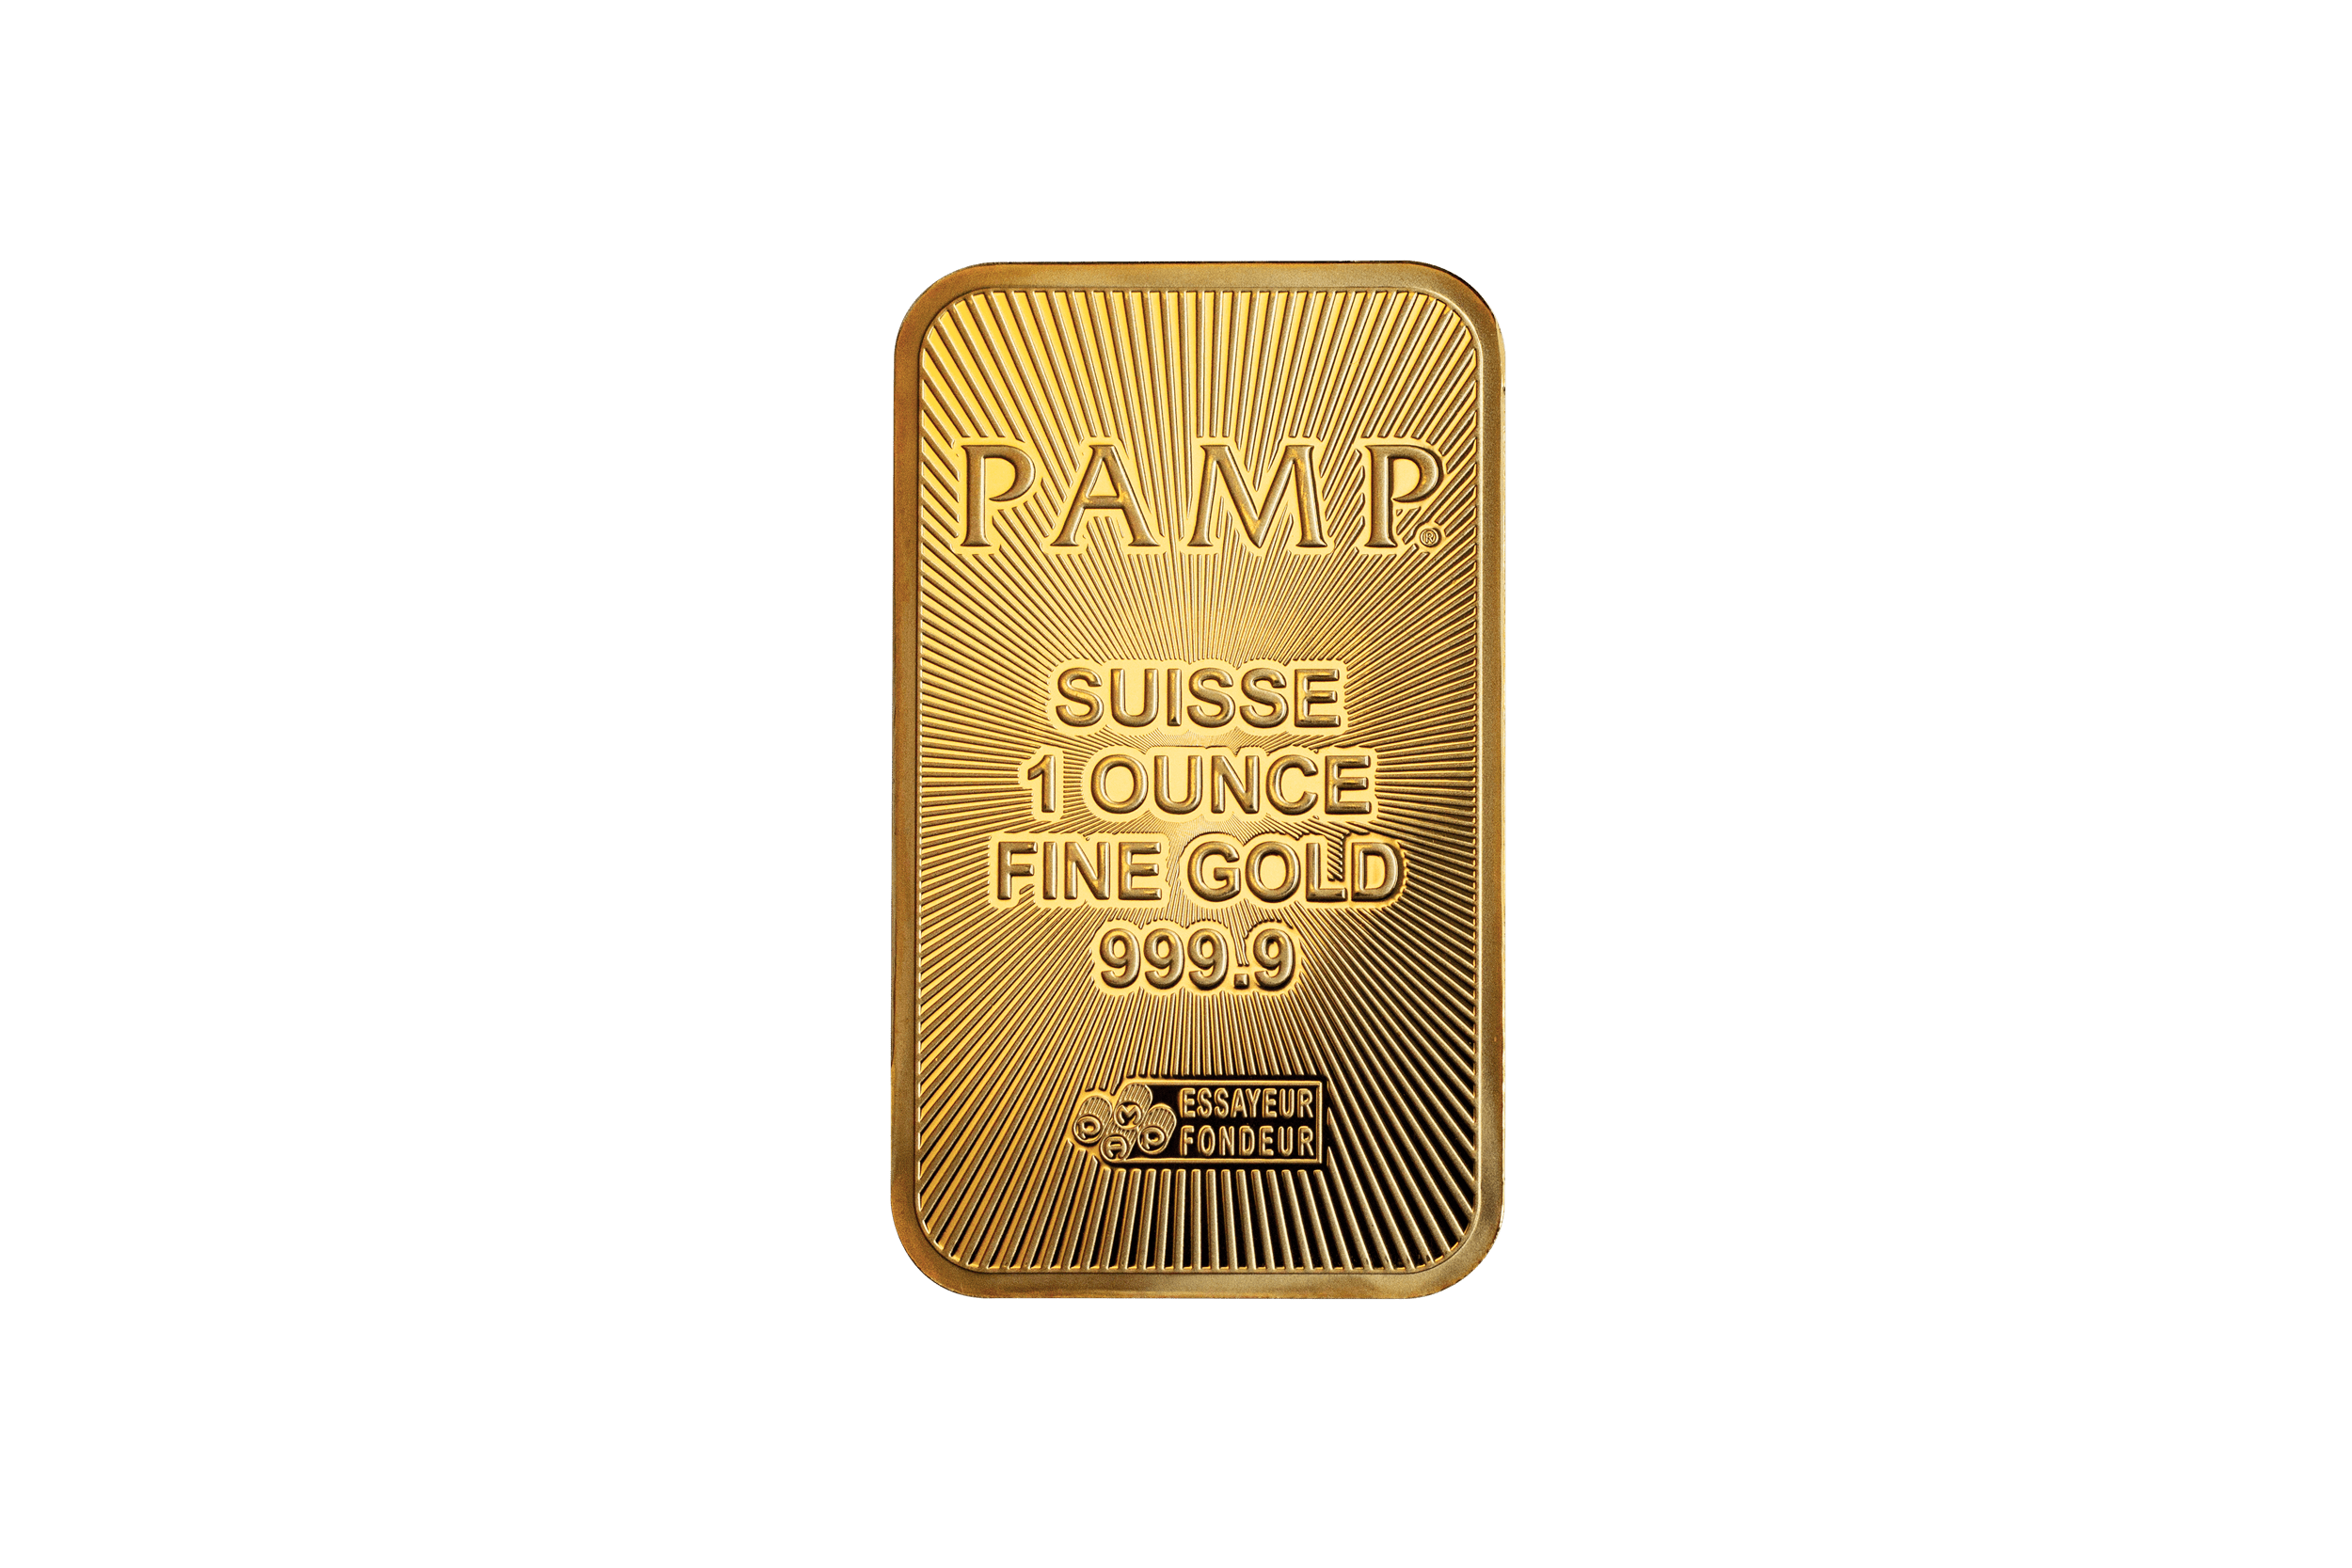 1 oz Gold Bar - Pamp Suisse - New Design